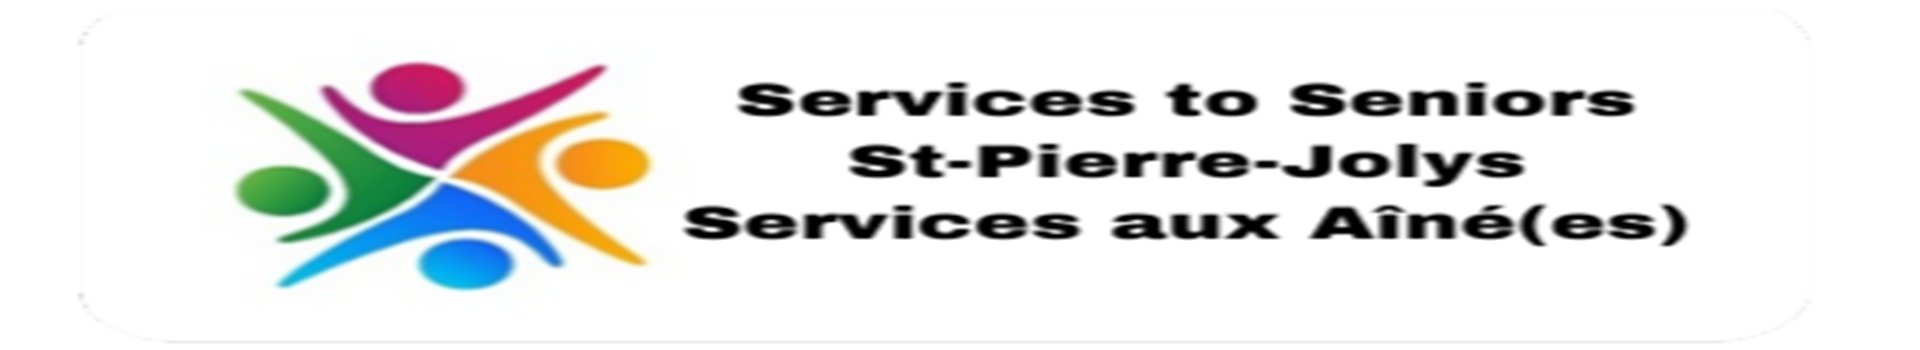 Services aux aînés - Services to Seniors - Contact